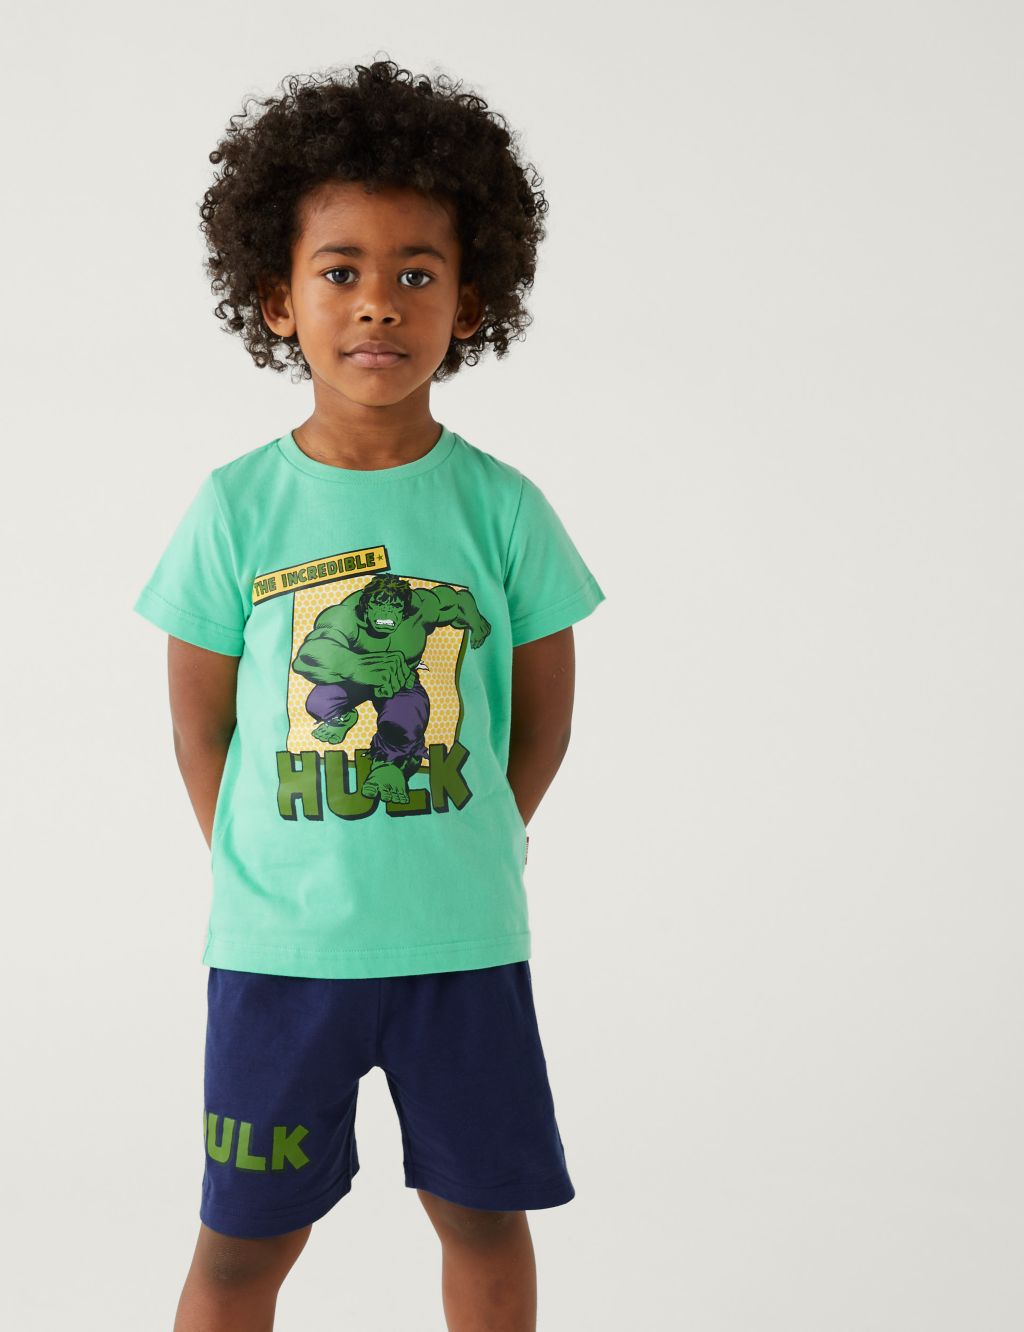 The Hulk™ Short Pyjama Set (3-12 Yrs) image 1